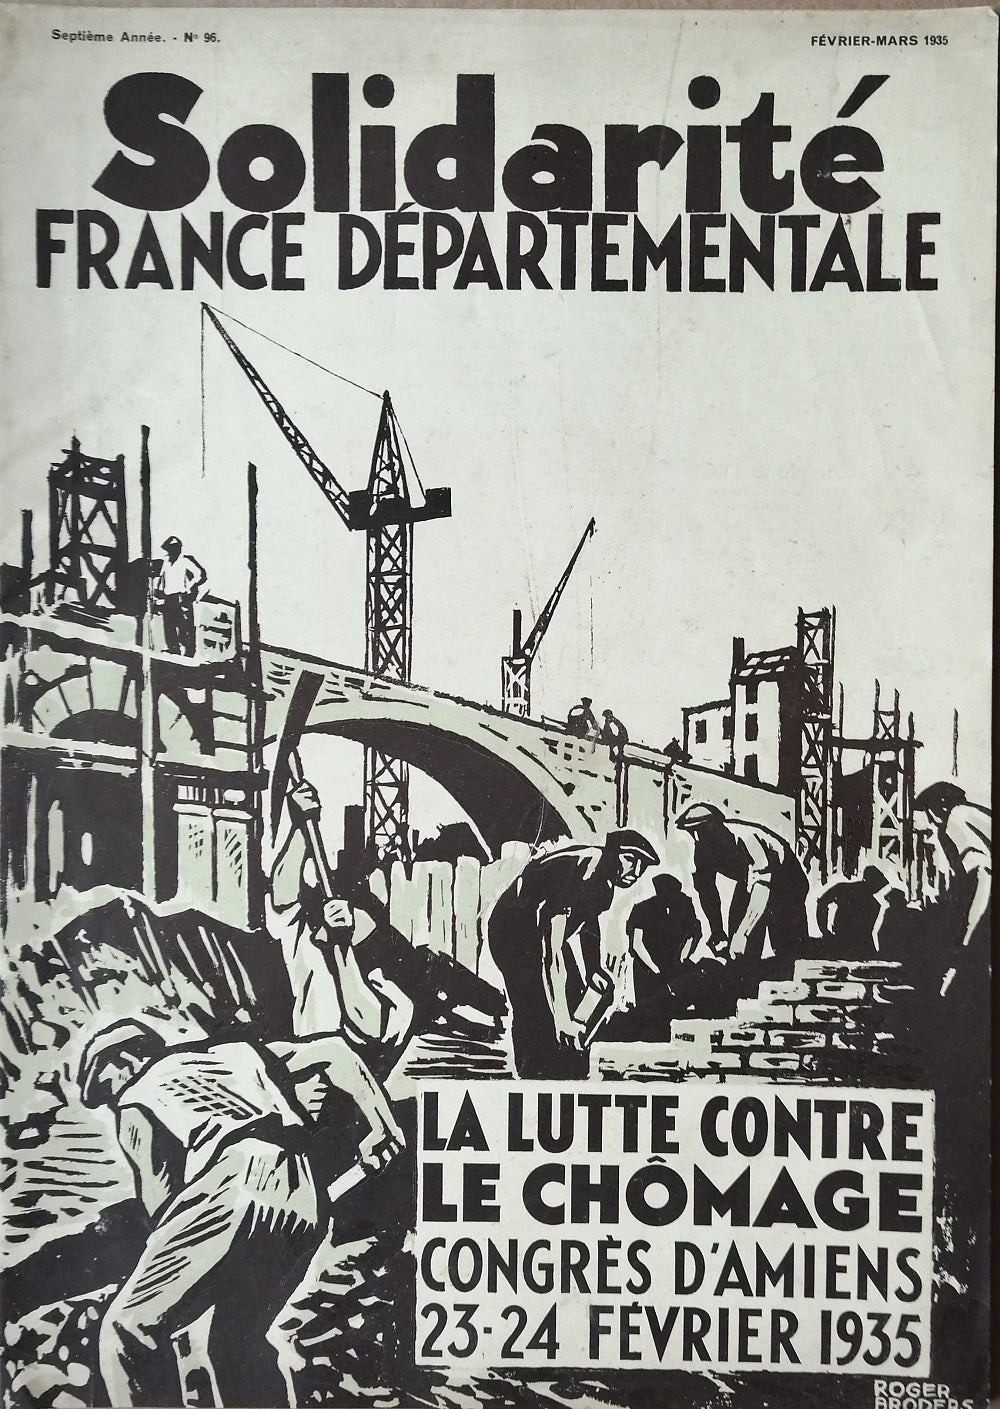 Broders Solidarité France Départementale février mars 1935